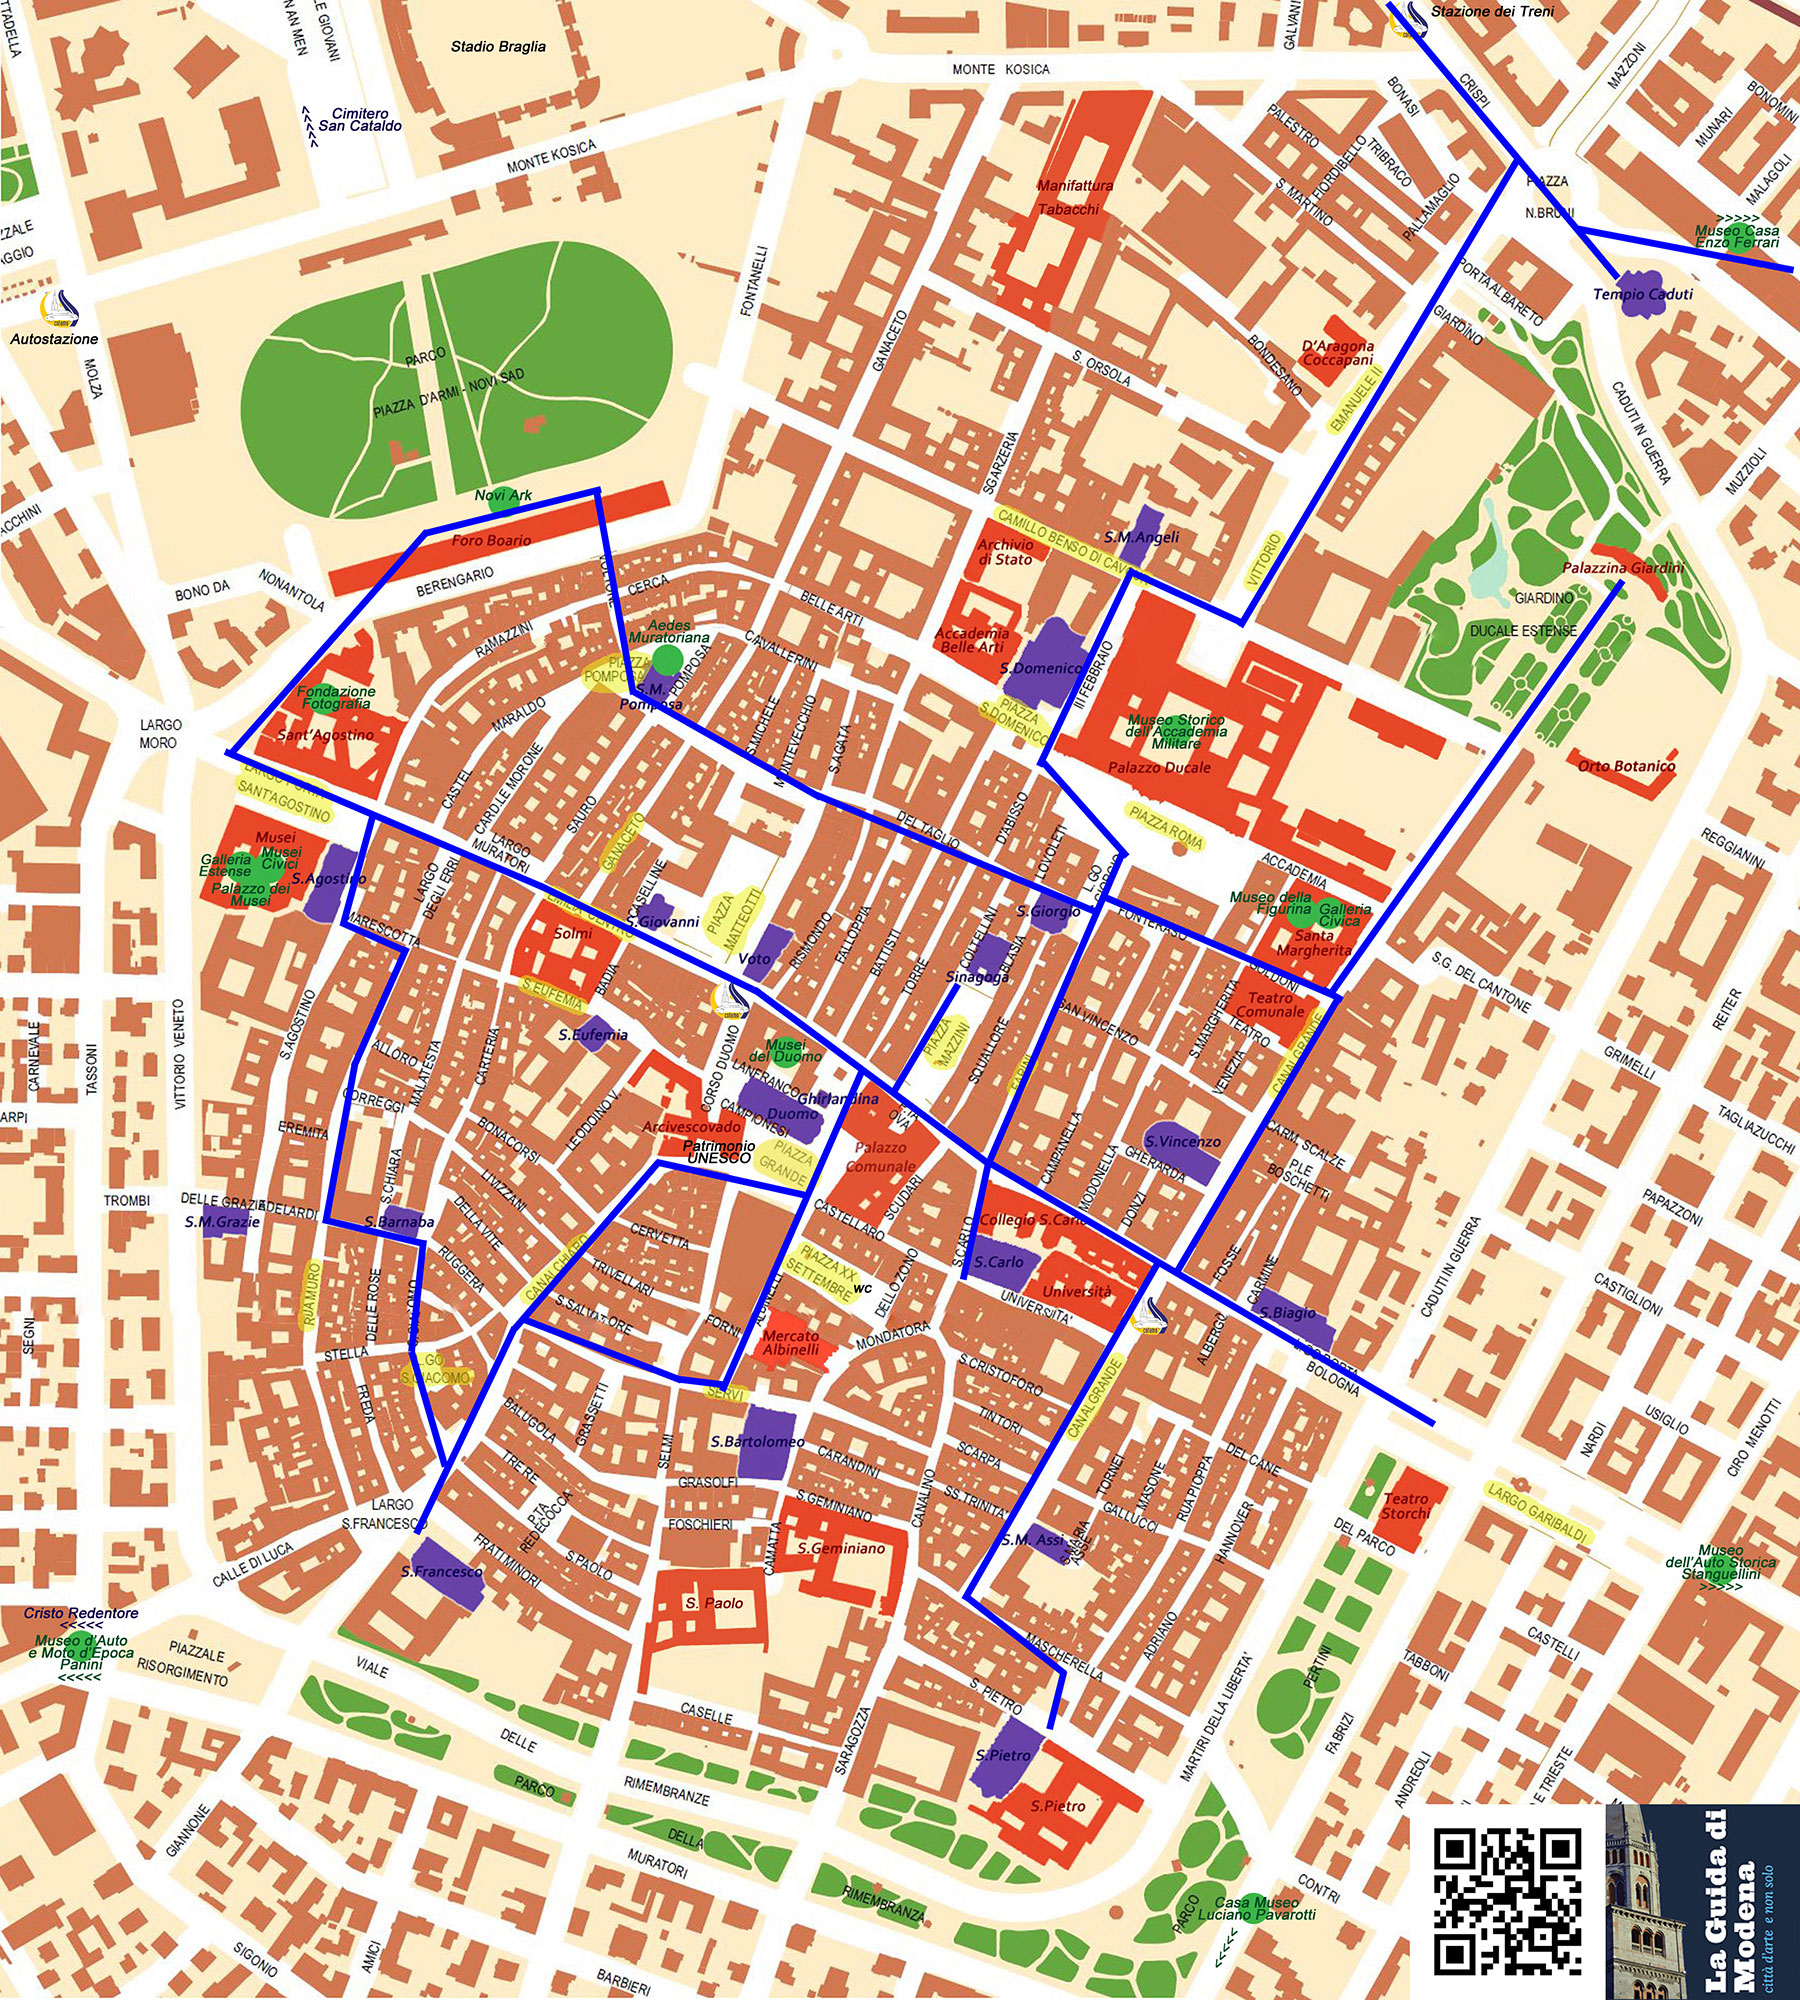 La Mappa di Modena